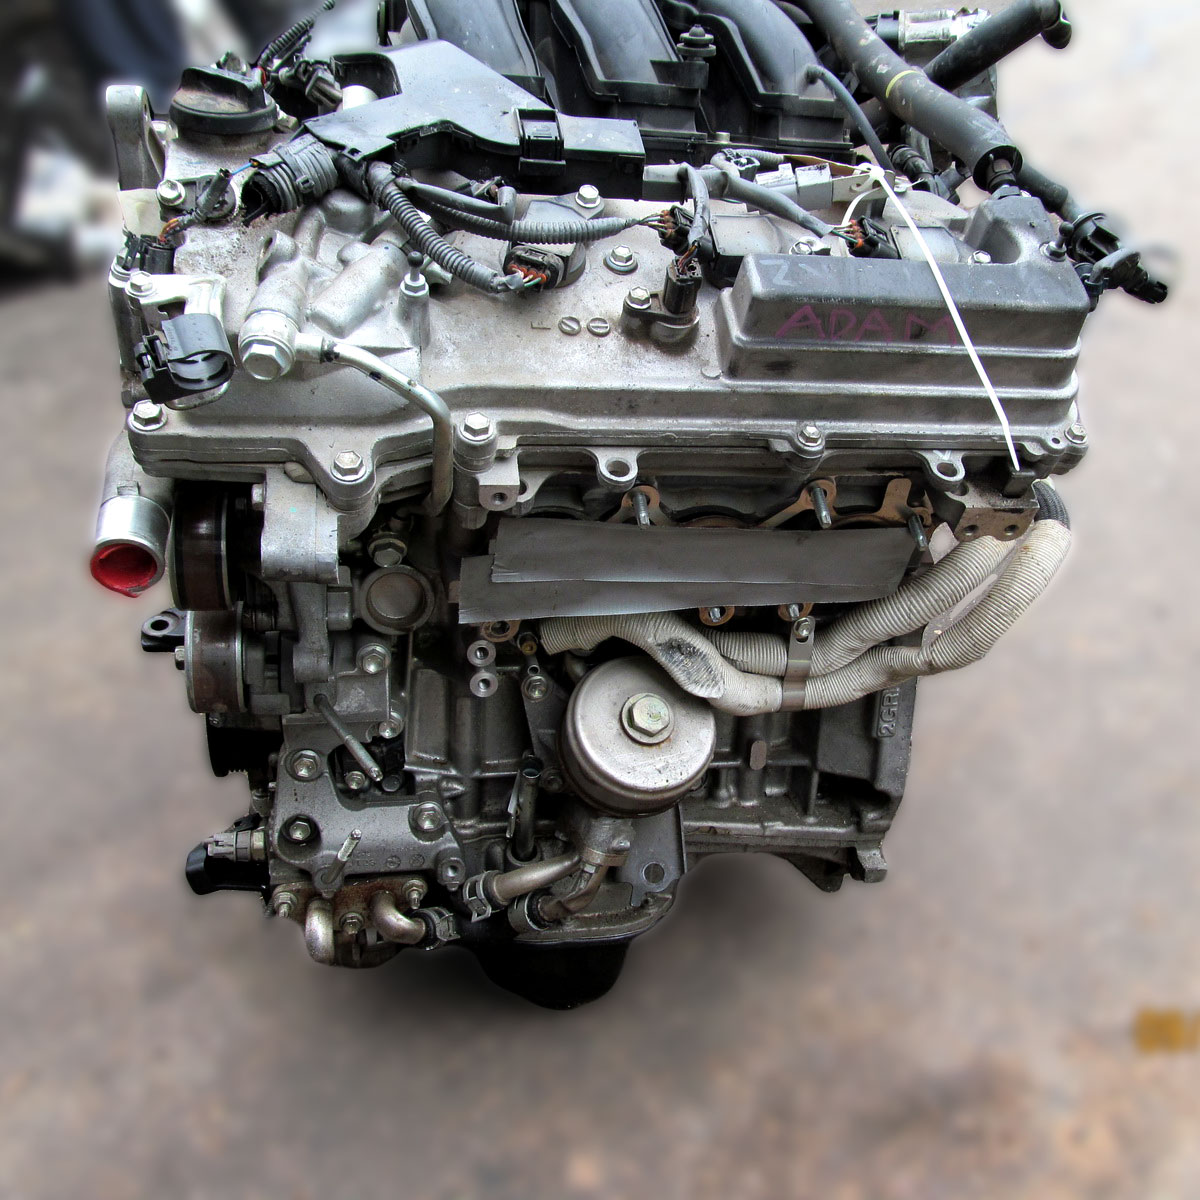 Двигатели 2az-fe/fse/fxe toyota – сравнение моторесурса распространенные проблемы в эксплуатации и обслуживании